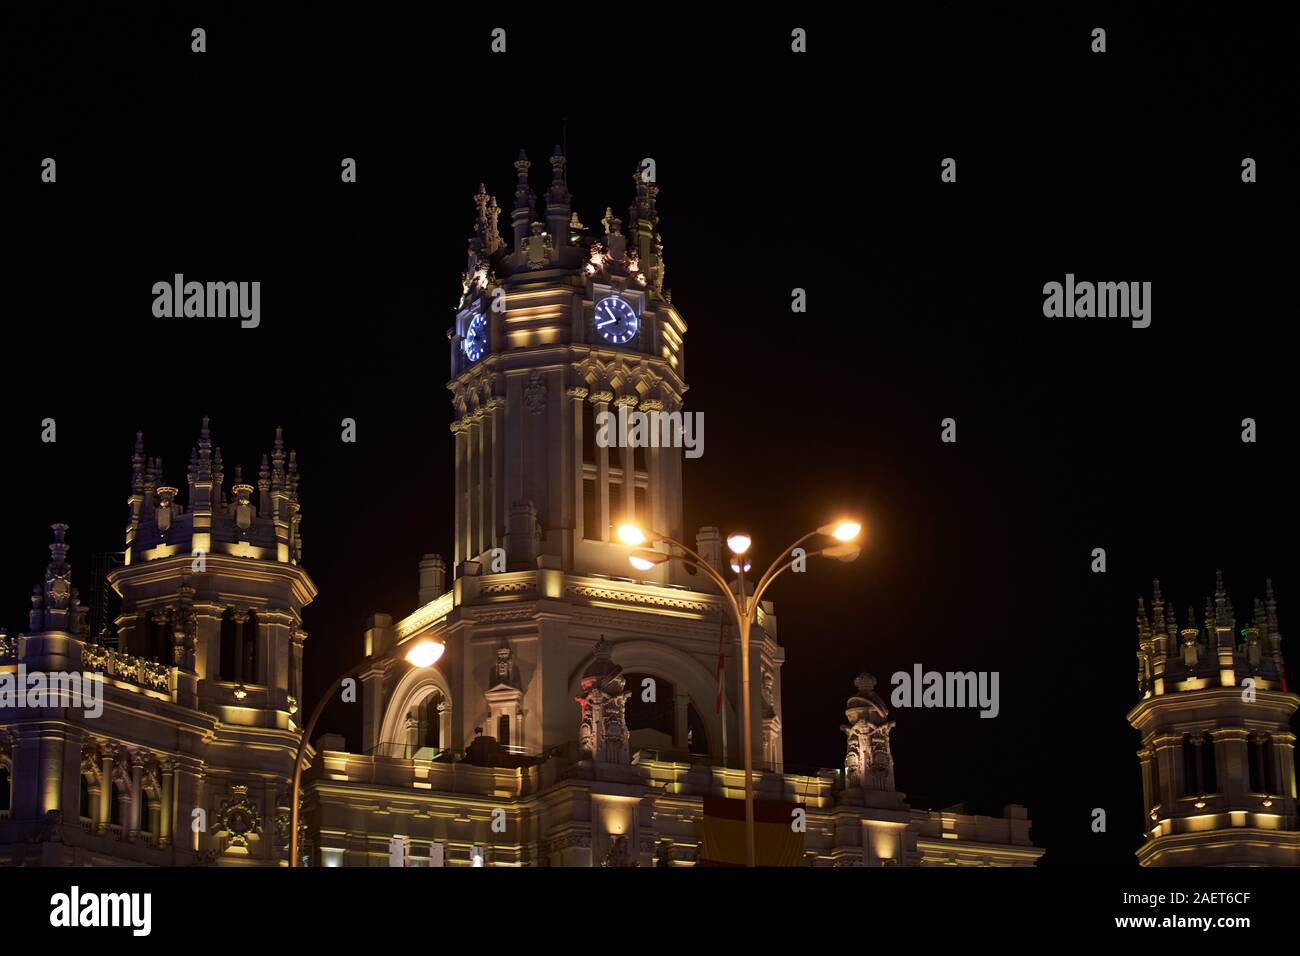 La torre dell'orologio del Palazzo delle comunicazioni a Cibeles a Madrid, illuminato in diversi colori per il Natale 2019 Foto Stock